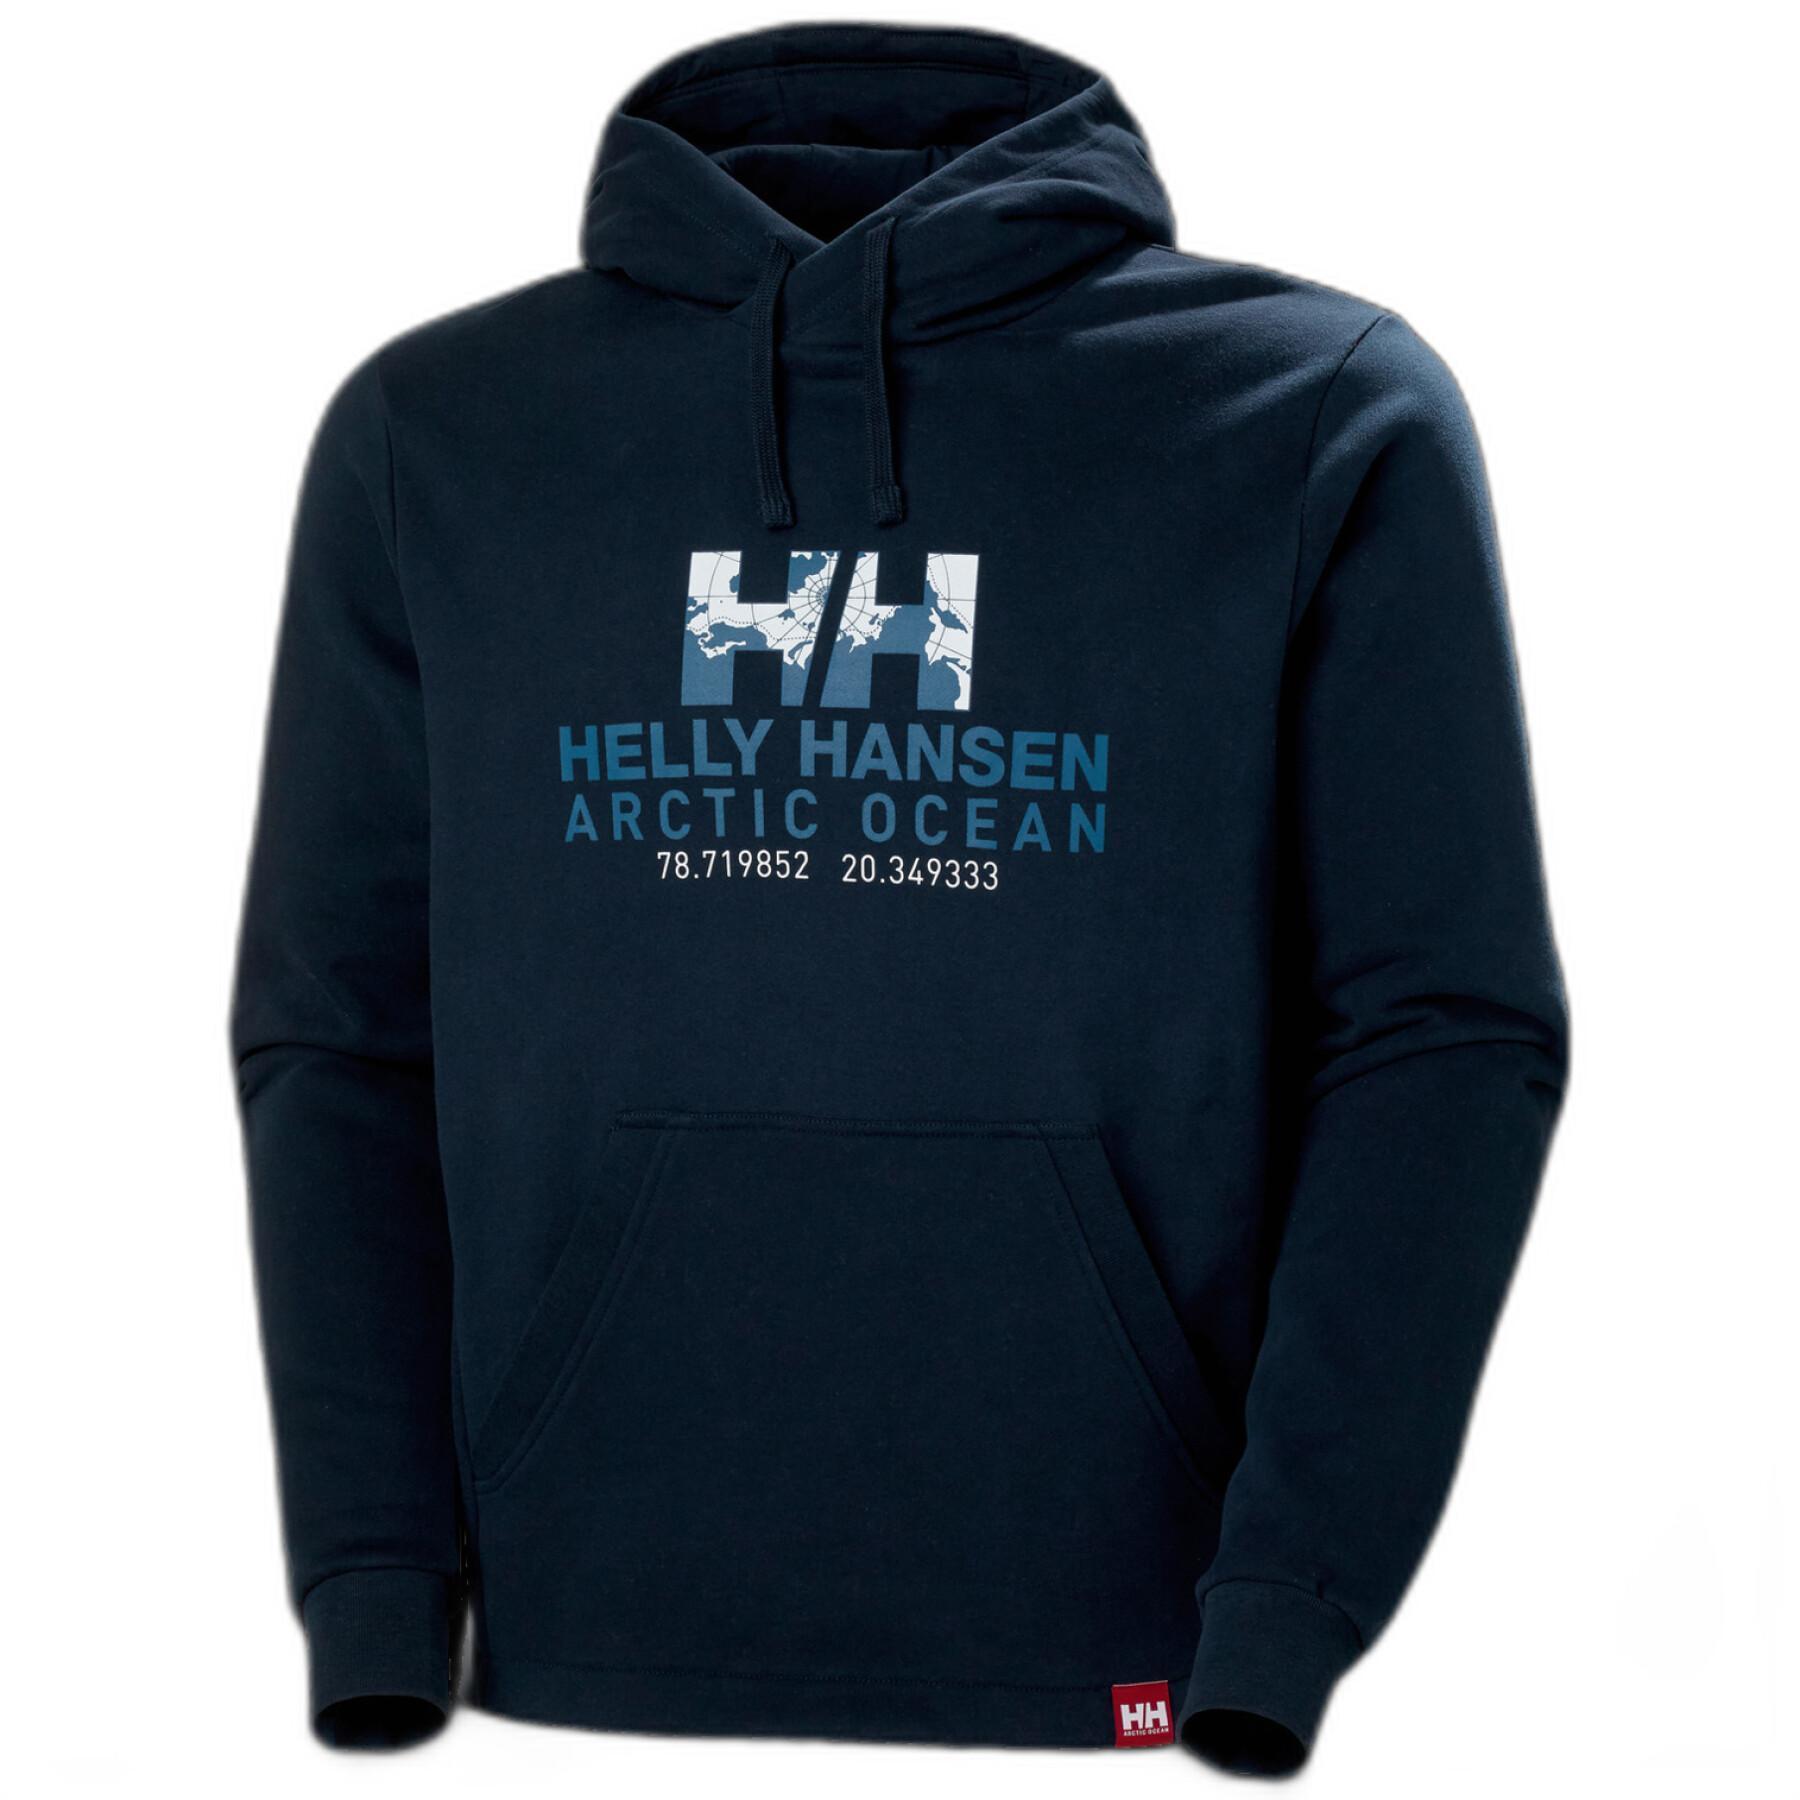 Sweatshirt à capuche Helly Hansen arctic ocean